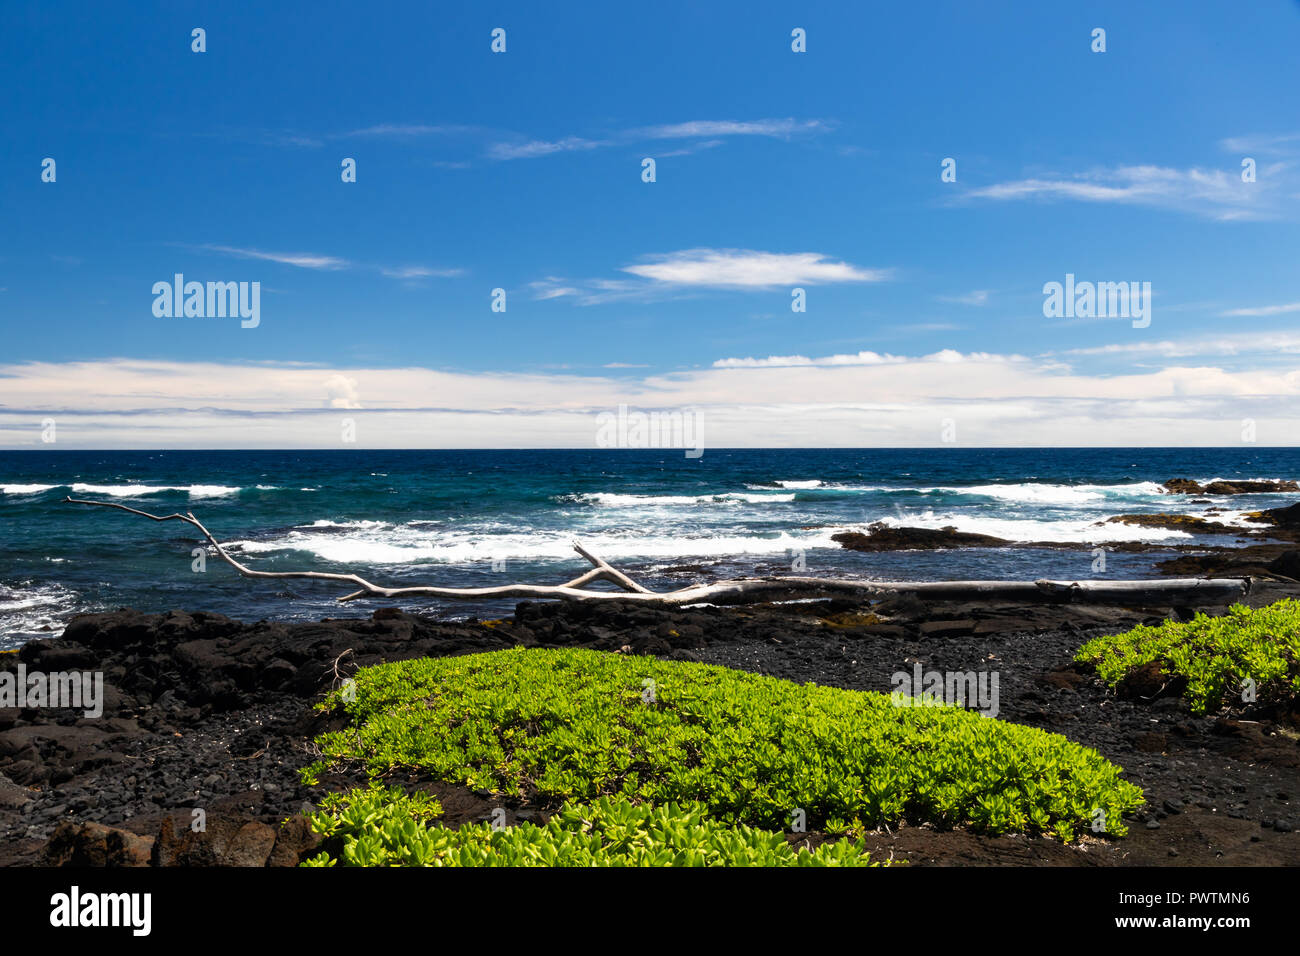 Schwarzer Sandstrand auf der grossen Insel von Hawaii; schwarze Vulkangestein und Vegetation im Vordergrund, das blaue Meer und Wellen im Hintergrund Stockfoto